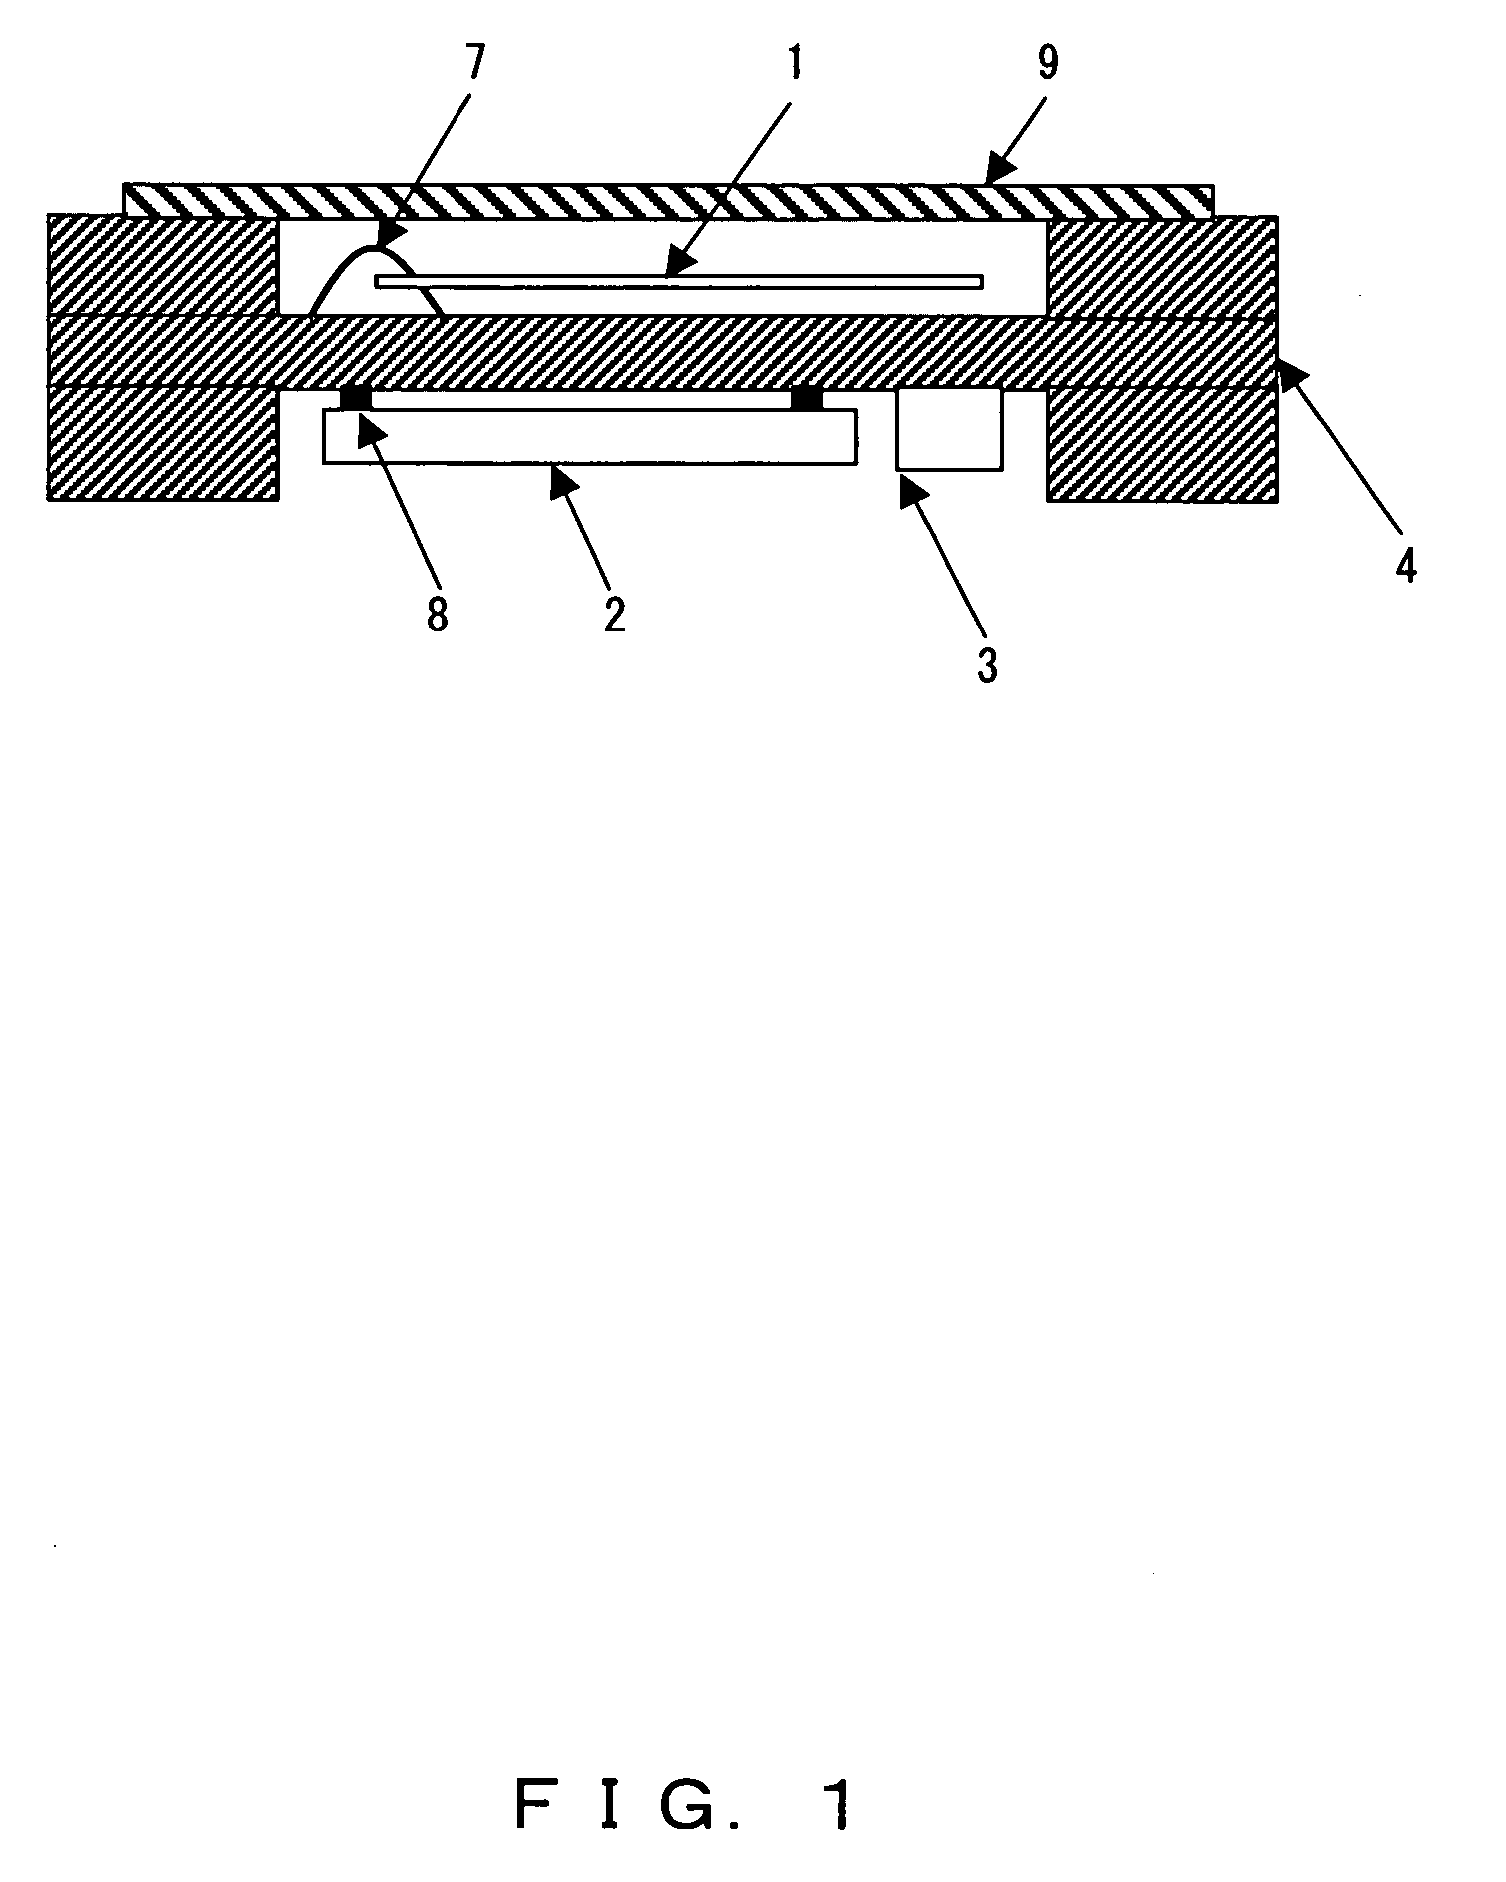 Surface-mounted oscillator